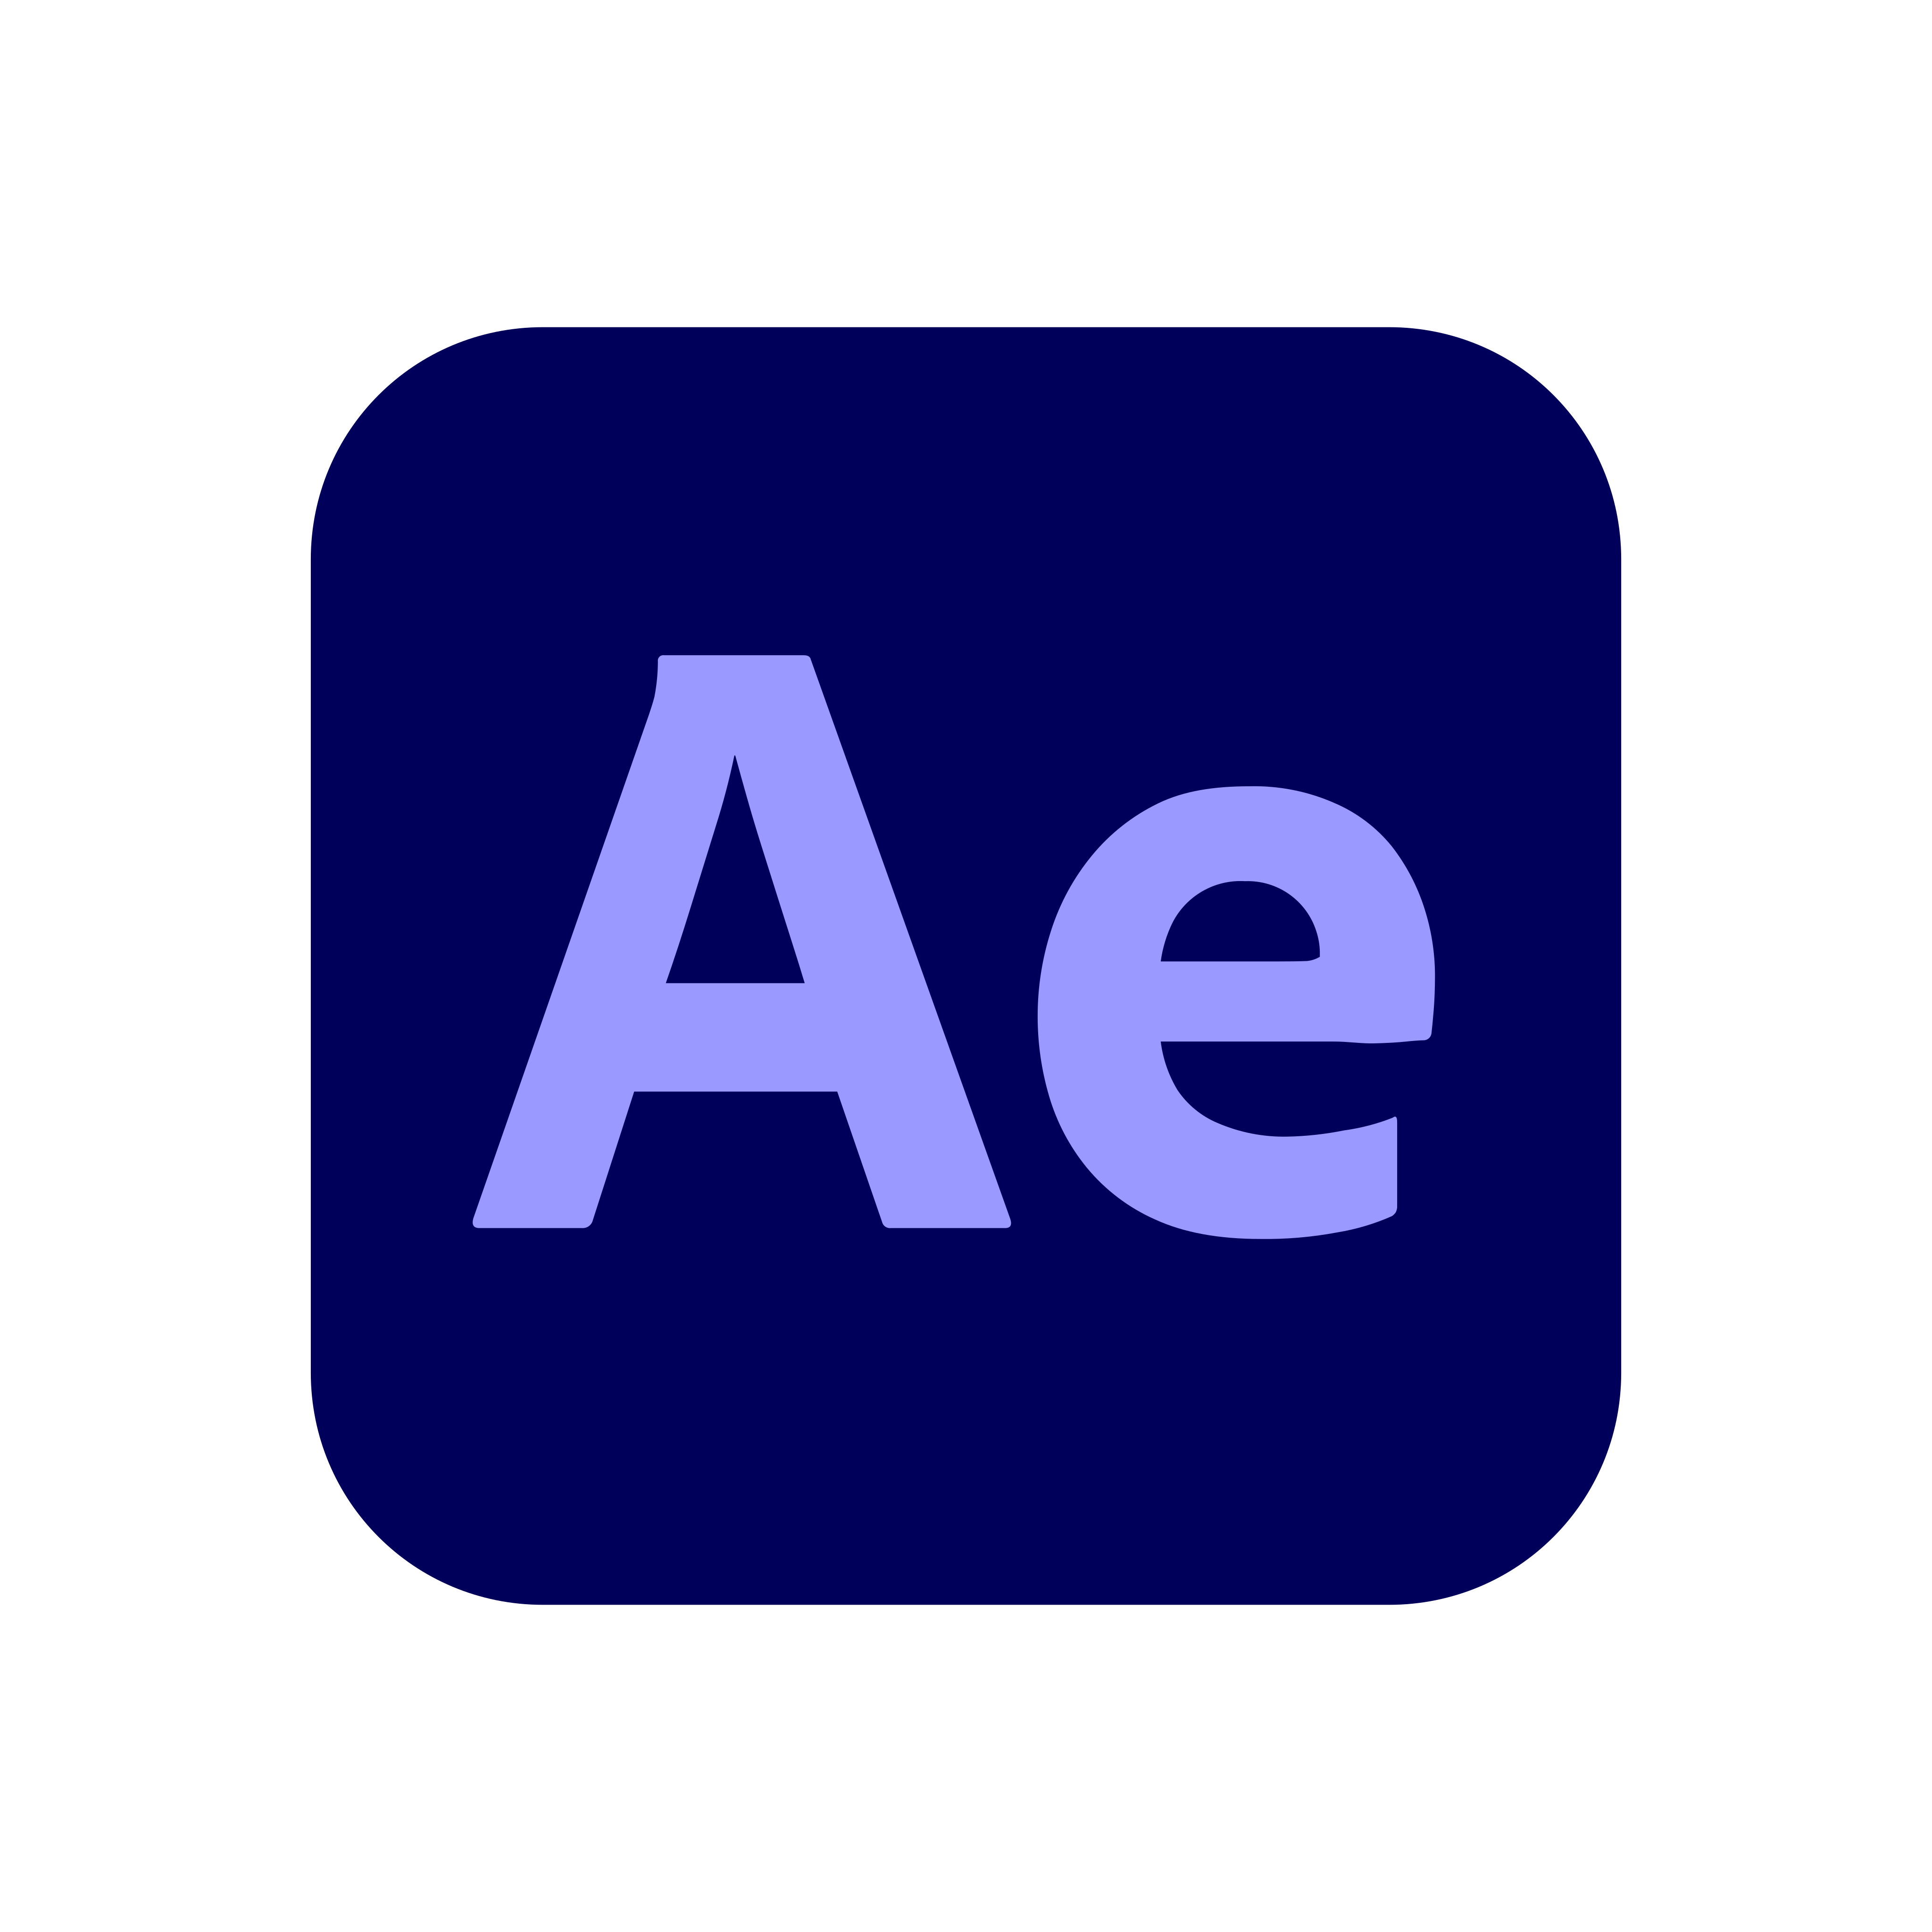 Free Download Logo Adobe After Effect Png - KibrisPDR